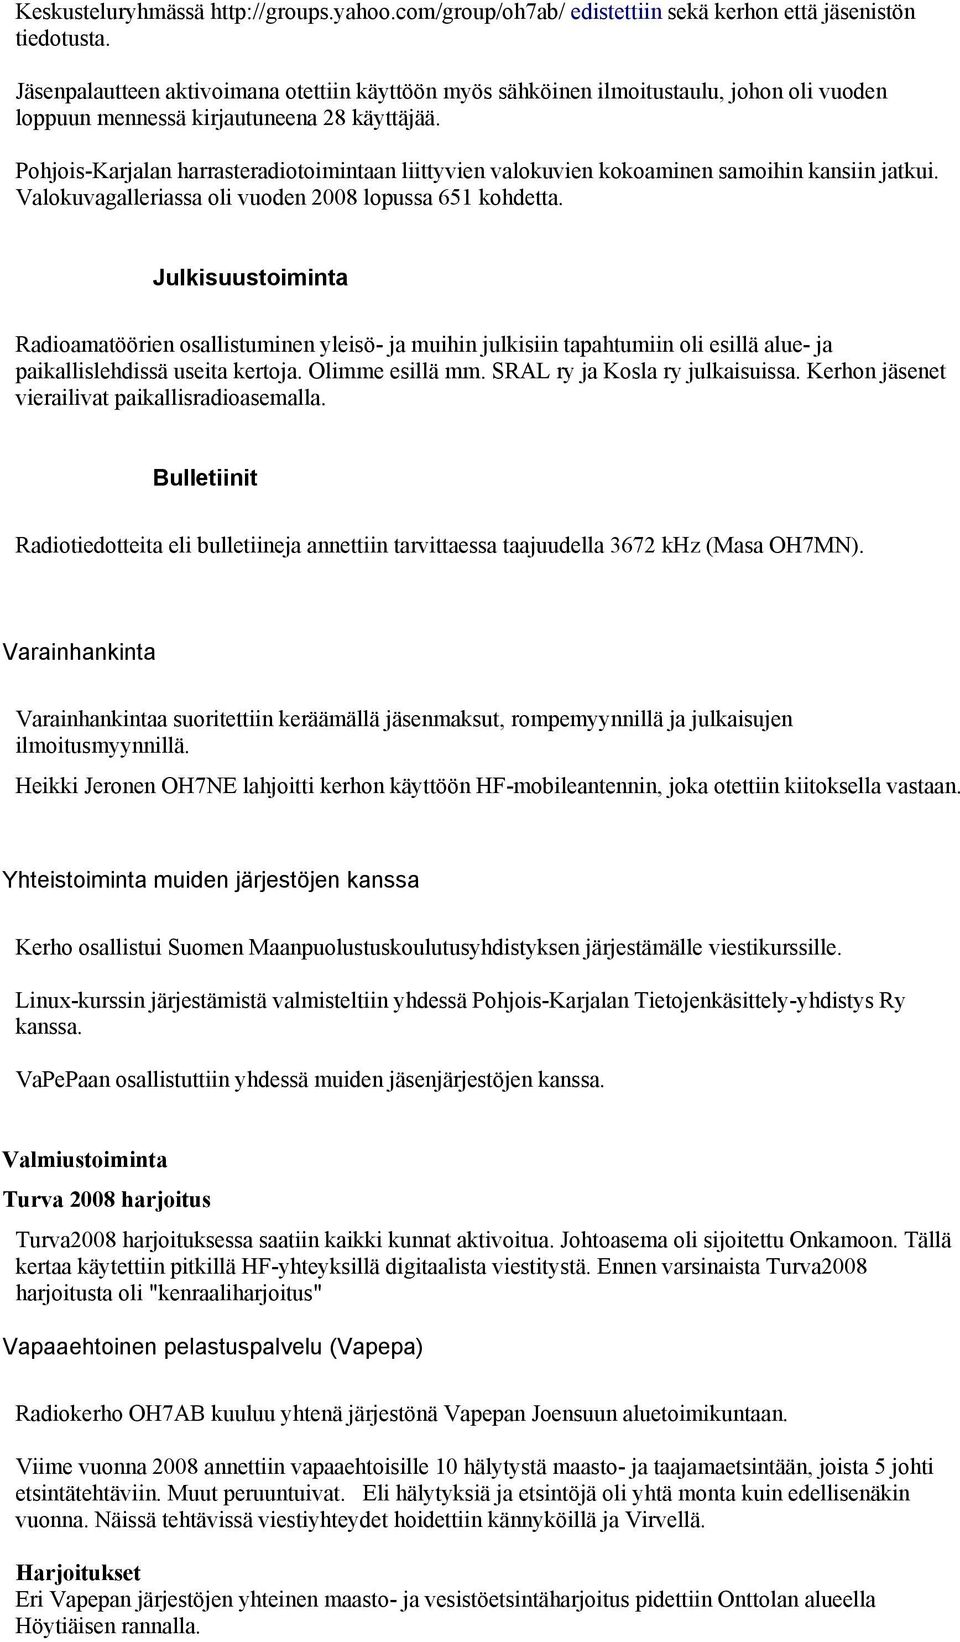 Pohjois-Karjalan harrasteradiotoimintaan liittyvien valokuvien kokoaminen samoihin kansiin jatkui. Valokuvagalleriassa oli vuoden 2008 lopussa 651 kohdetta.